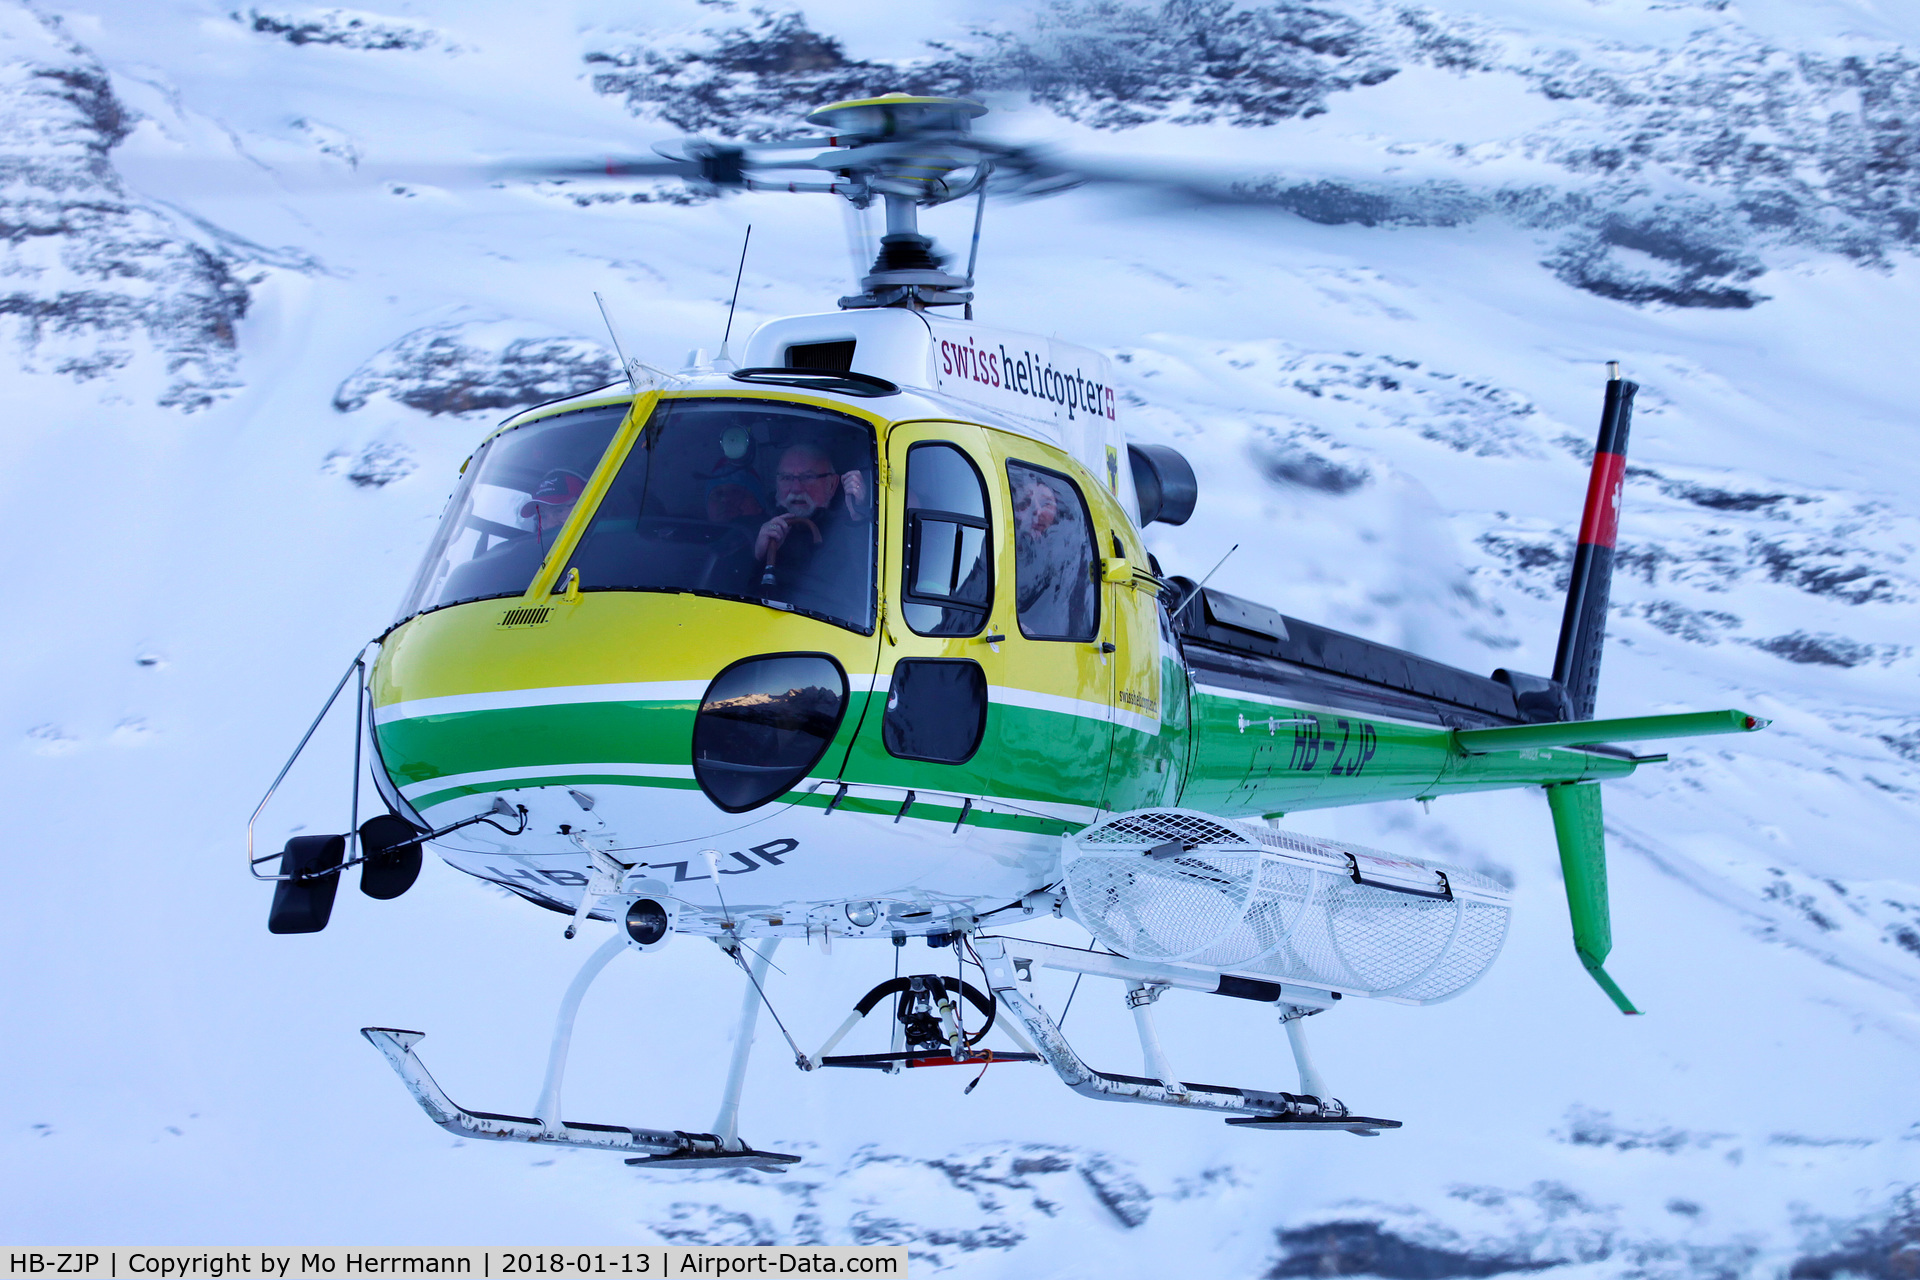 HB-ZJP, 2009 Eurocopter AS-350B-3 Ecureuil Ecureuil C/N 4677, Lauberhorn FIS Ski Race